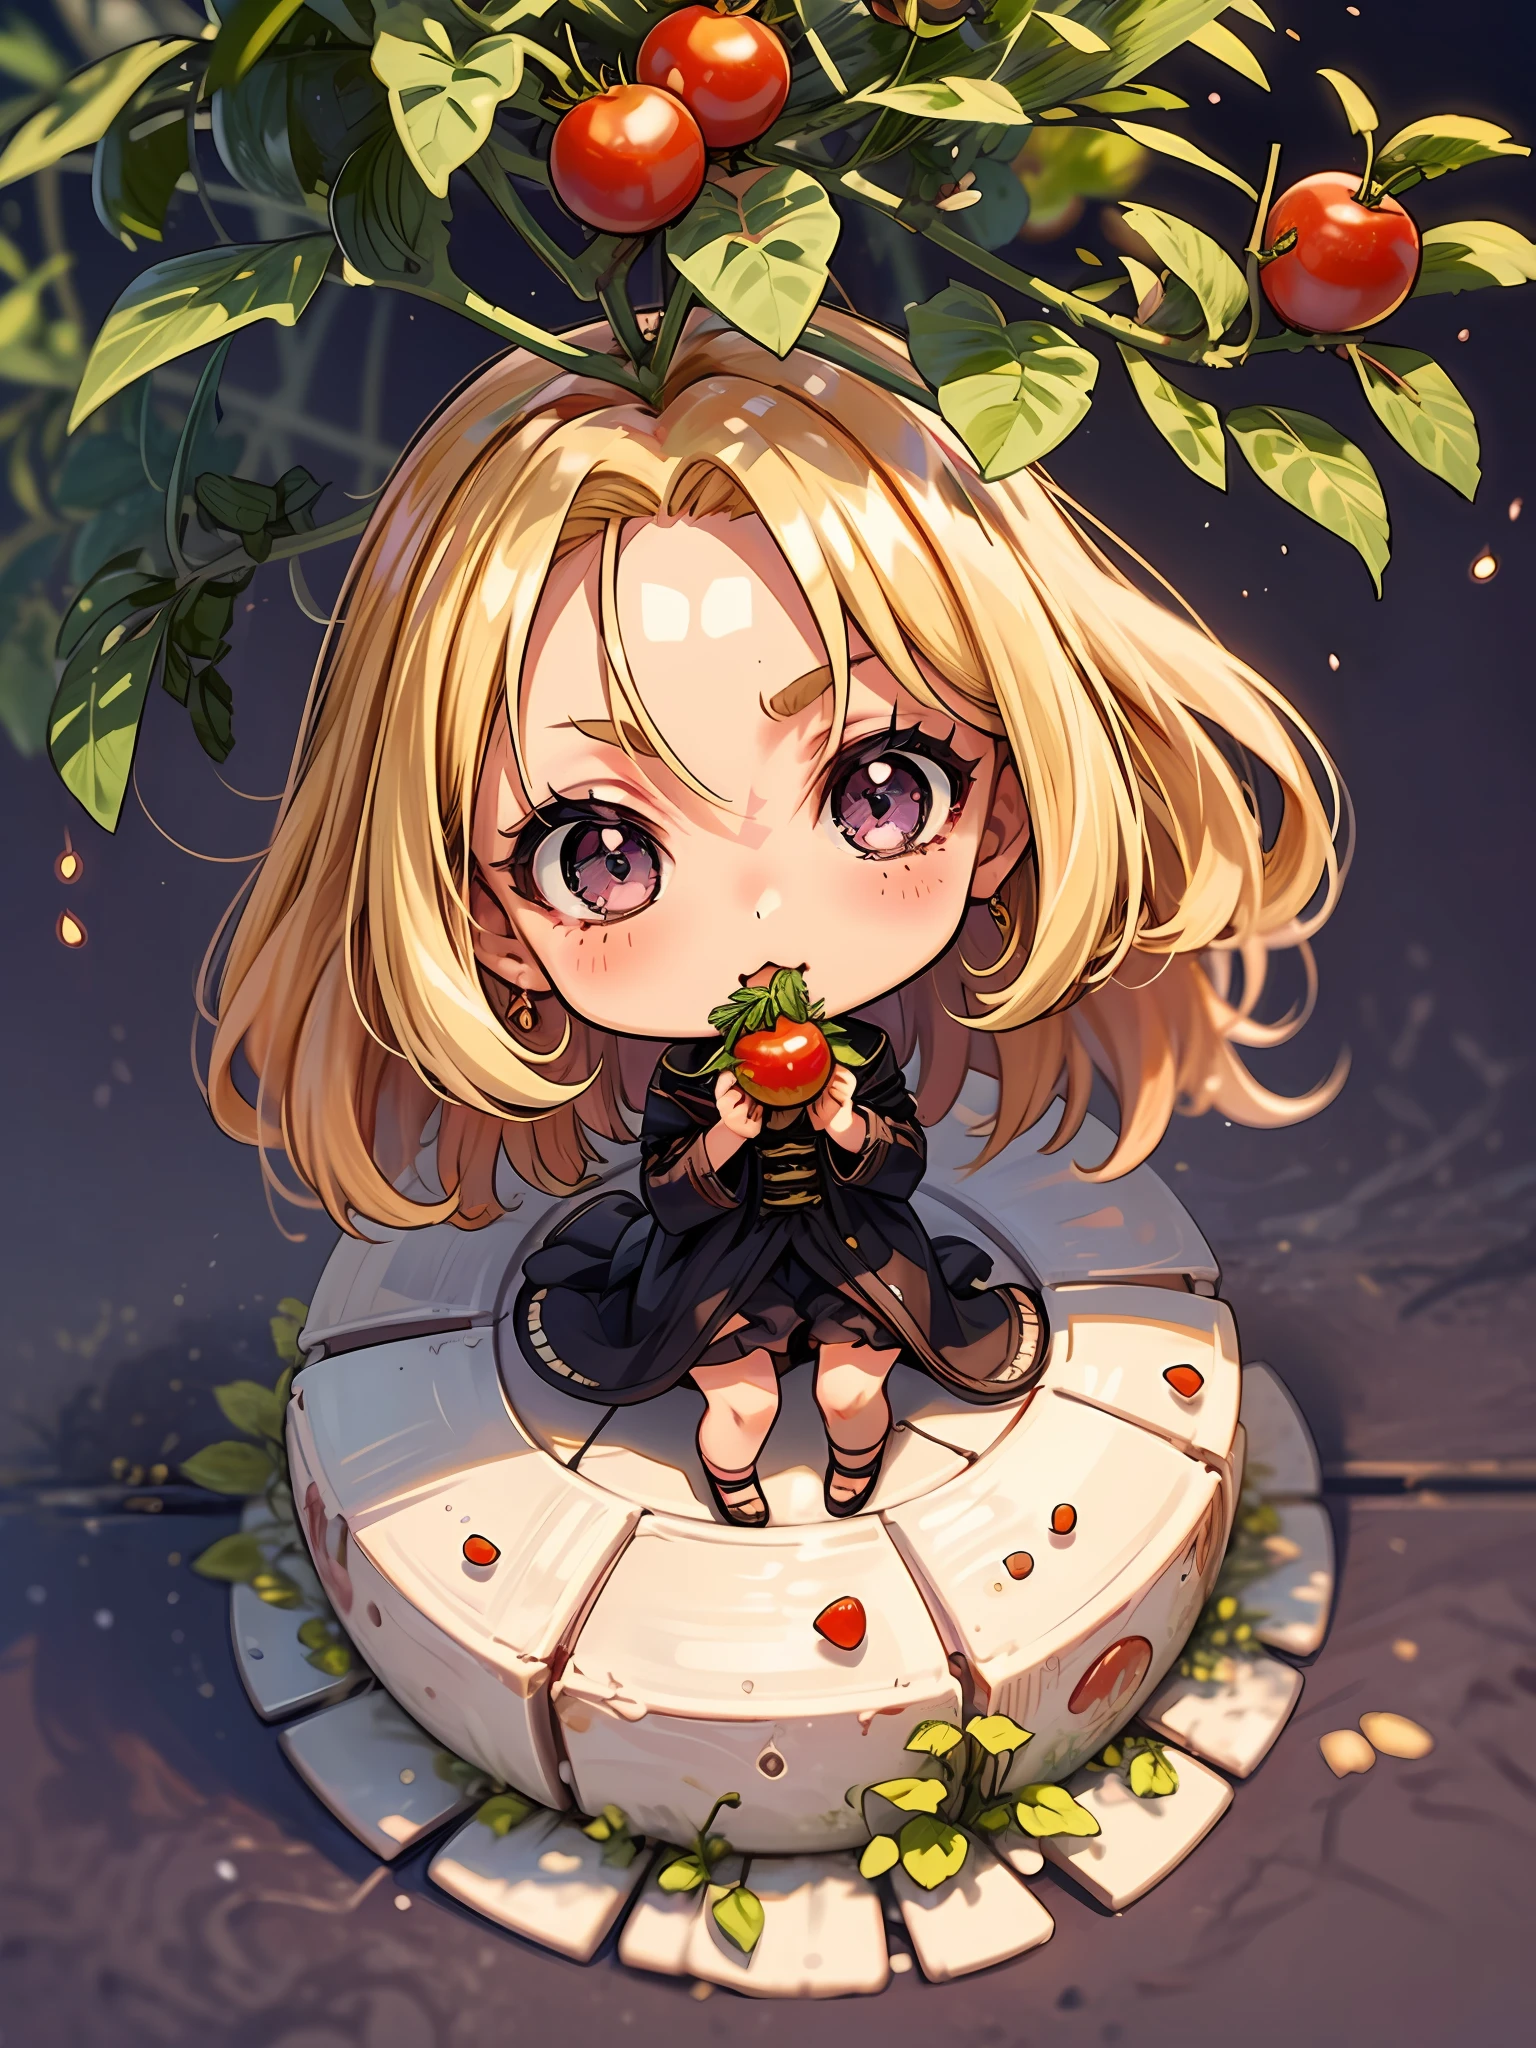 一個女孩蹲在櫻桃番茄樹前吃櫻桃番茄. 1 名女孩, 獨自的, 金毛, 捲髮, 側分, 紫色的眼睛. 她是一體的. 她的背景兩旁是比女孩還高的櫻桃番茄樹. 幻想 ((赤壁T-Shi))